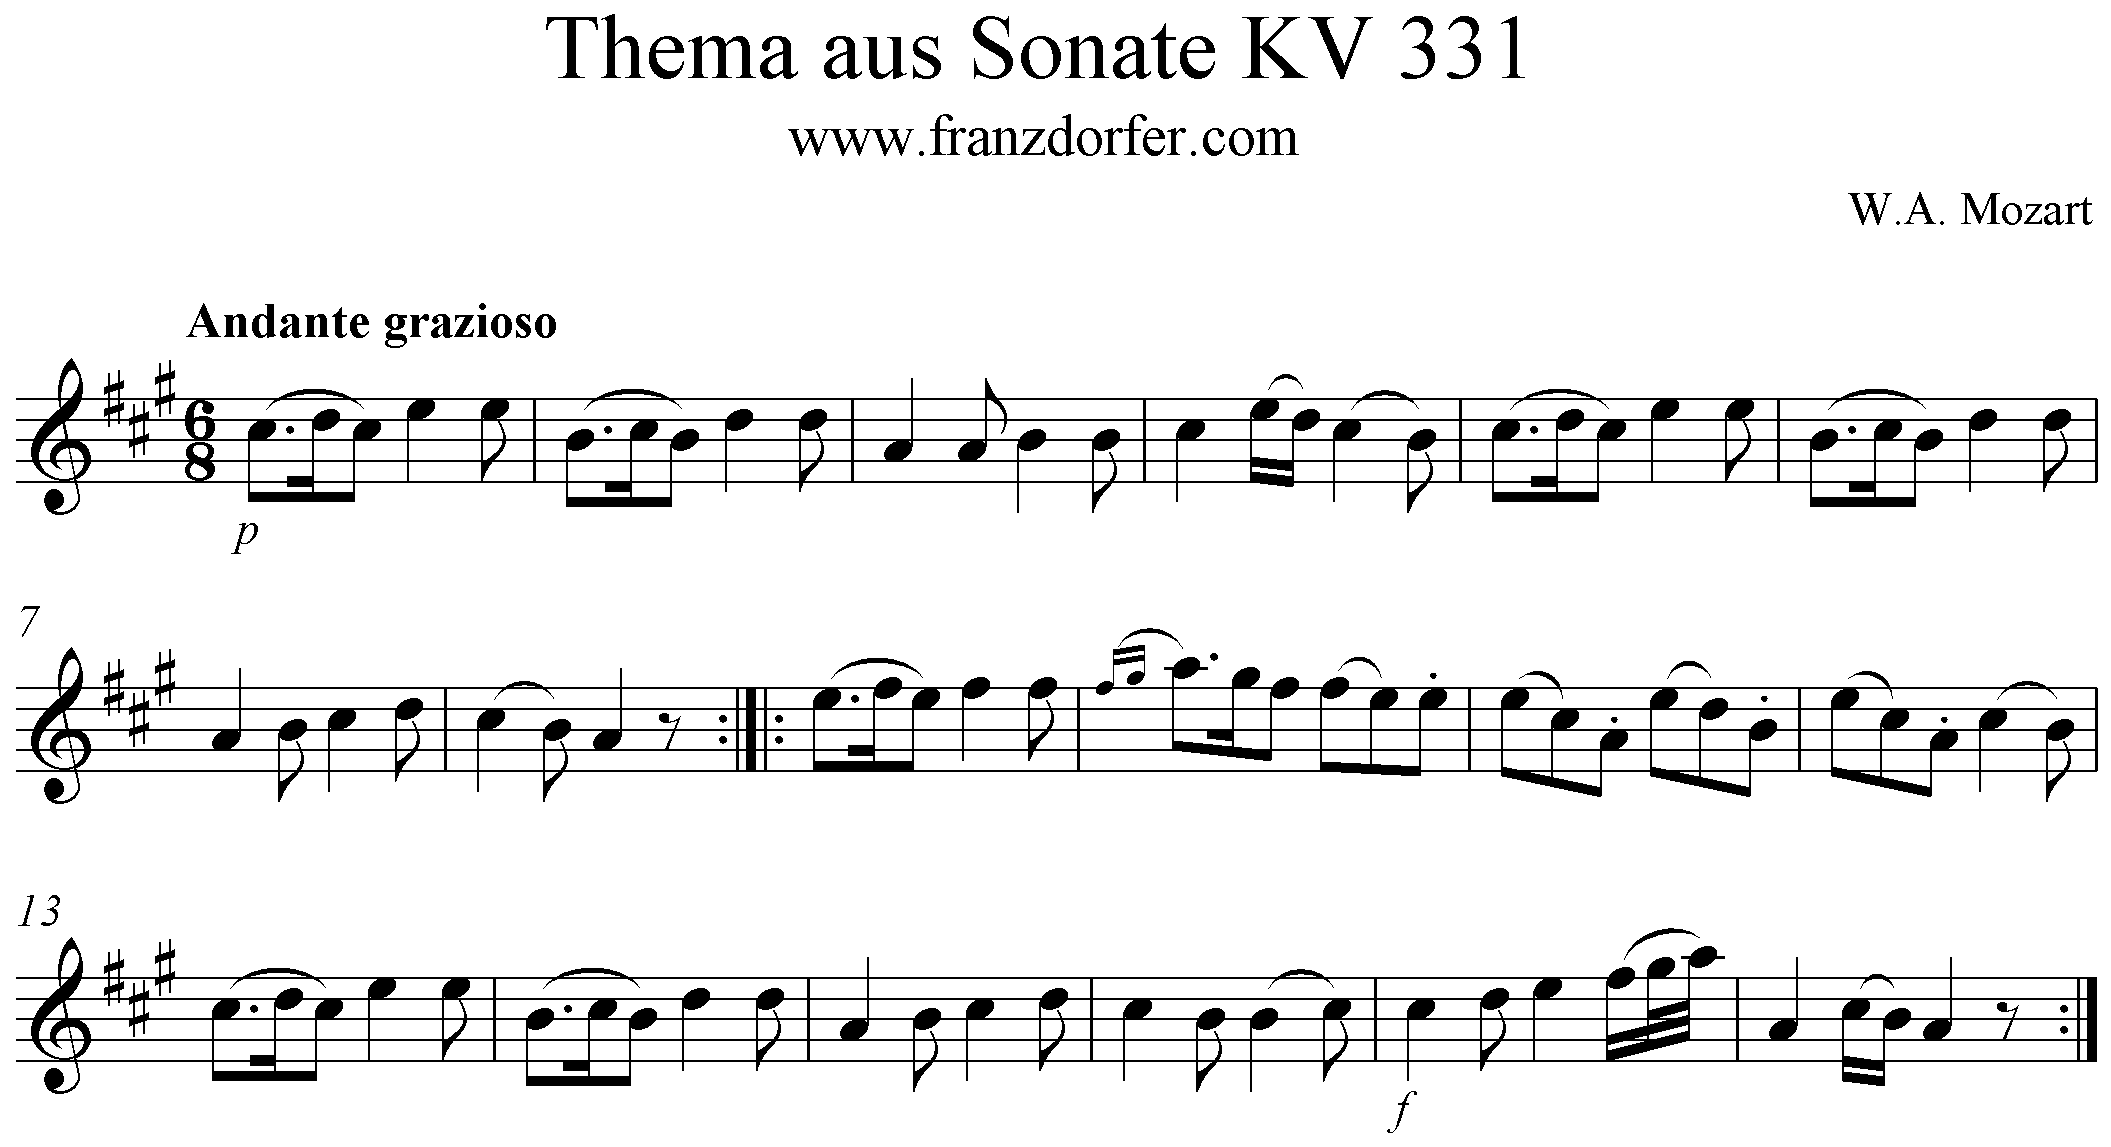 KV331 Andante grazioso Theme Solopart